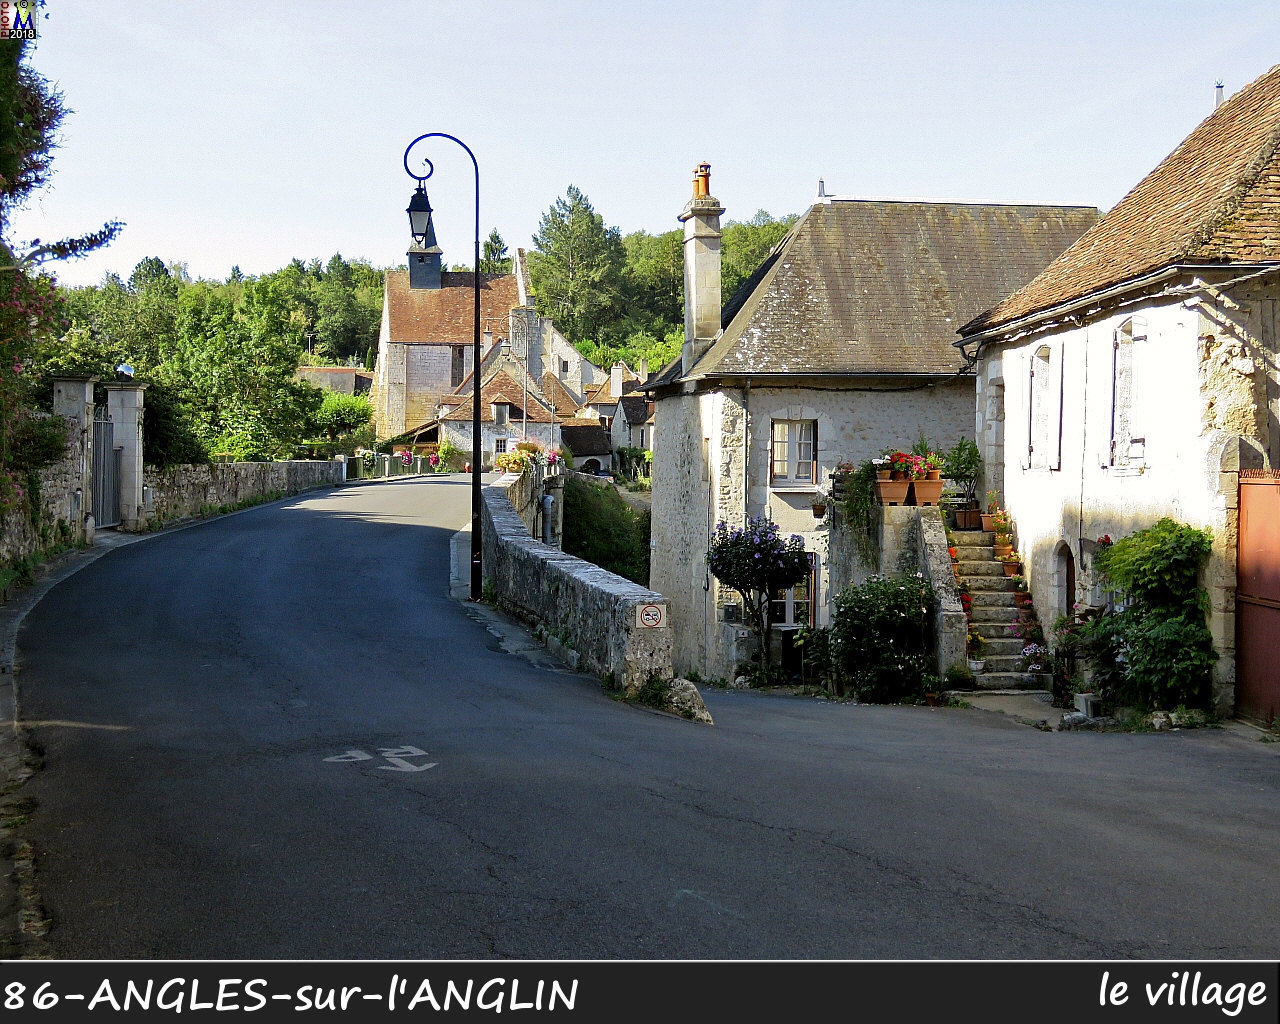 86ANGLES-S-ANGLIN_village_1088.jpg